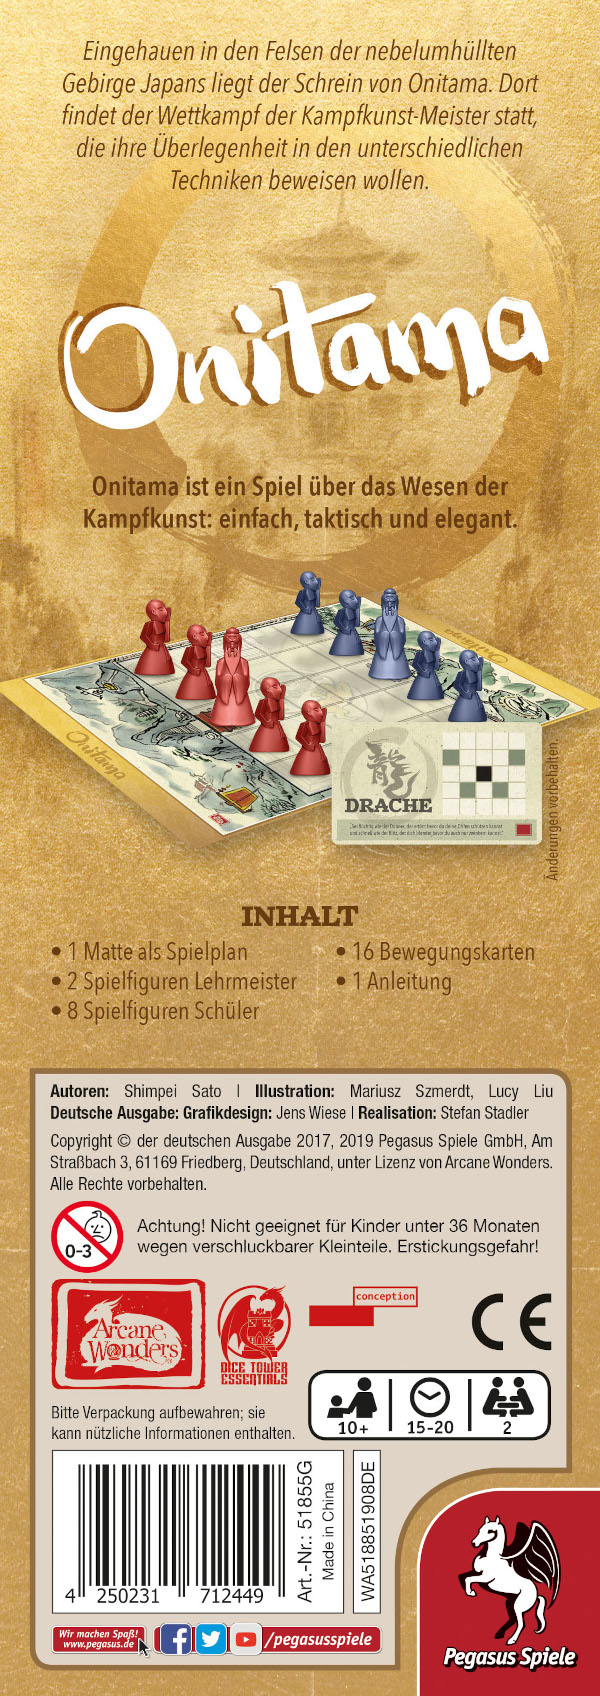 Onitama Brettspiel Verpackung Rückseite Pegasus Spielgetuschel.jpg